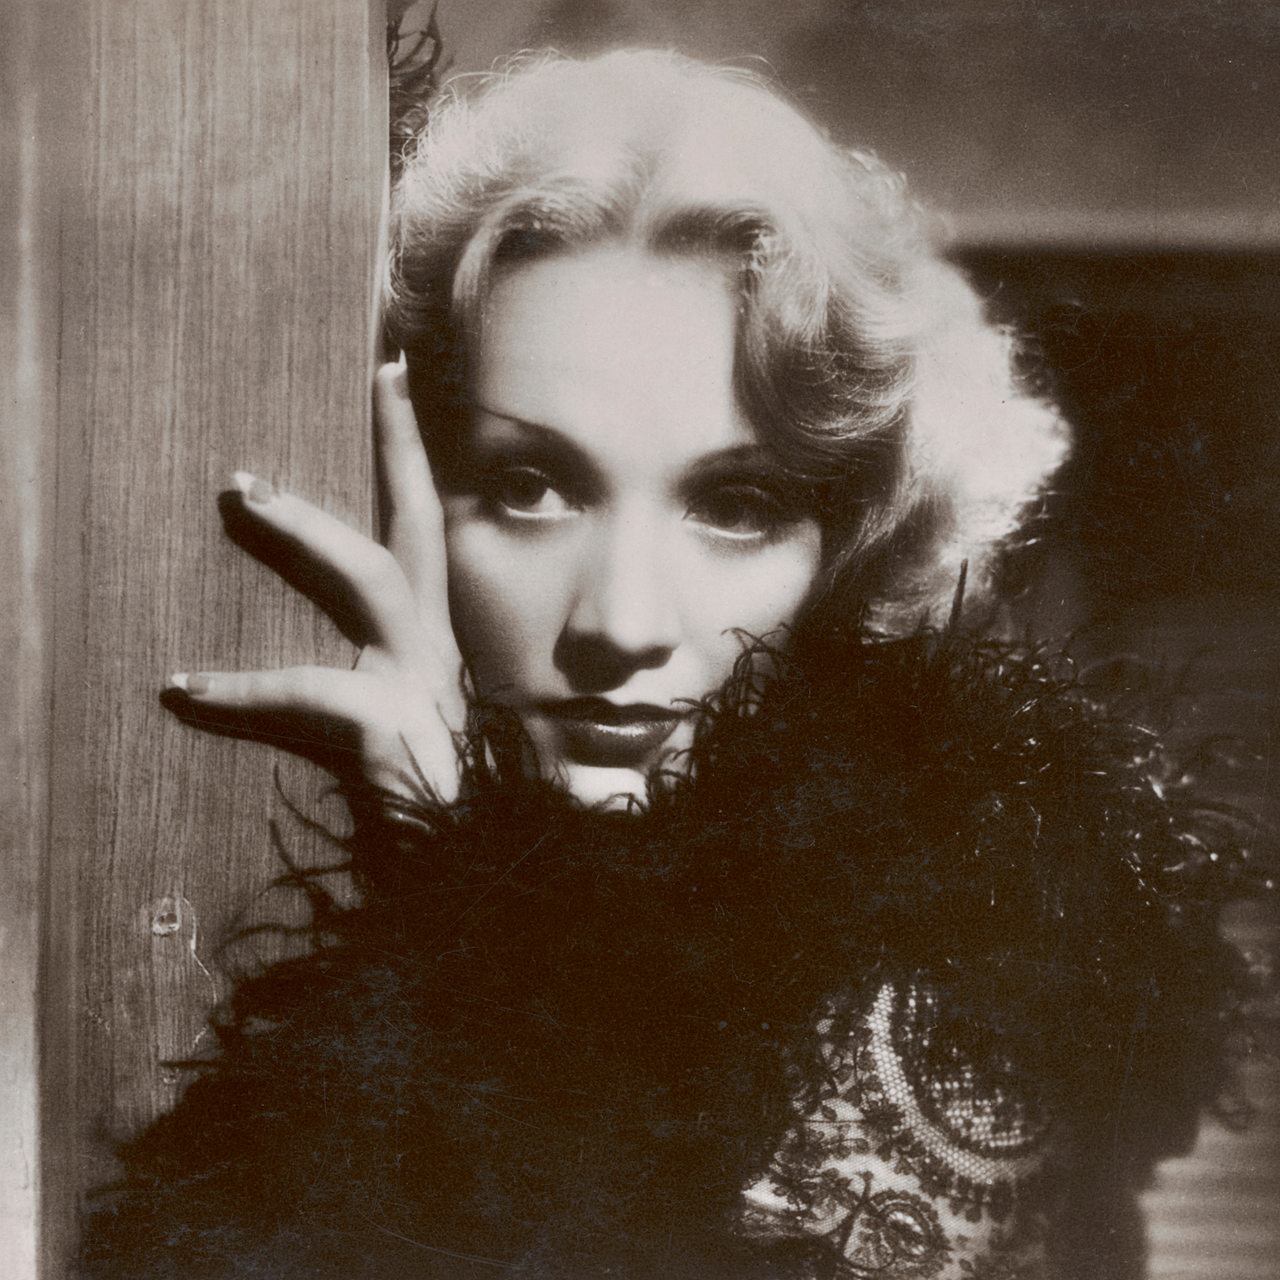 Porträt von Marlene Dietrich mit Federboa